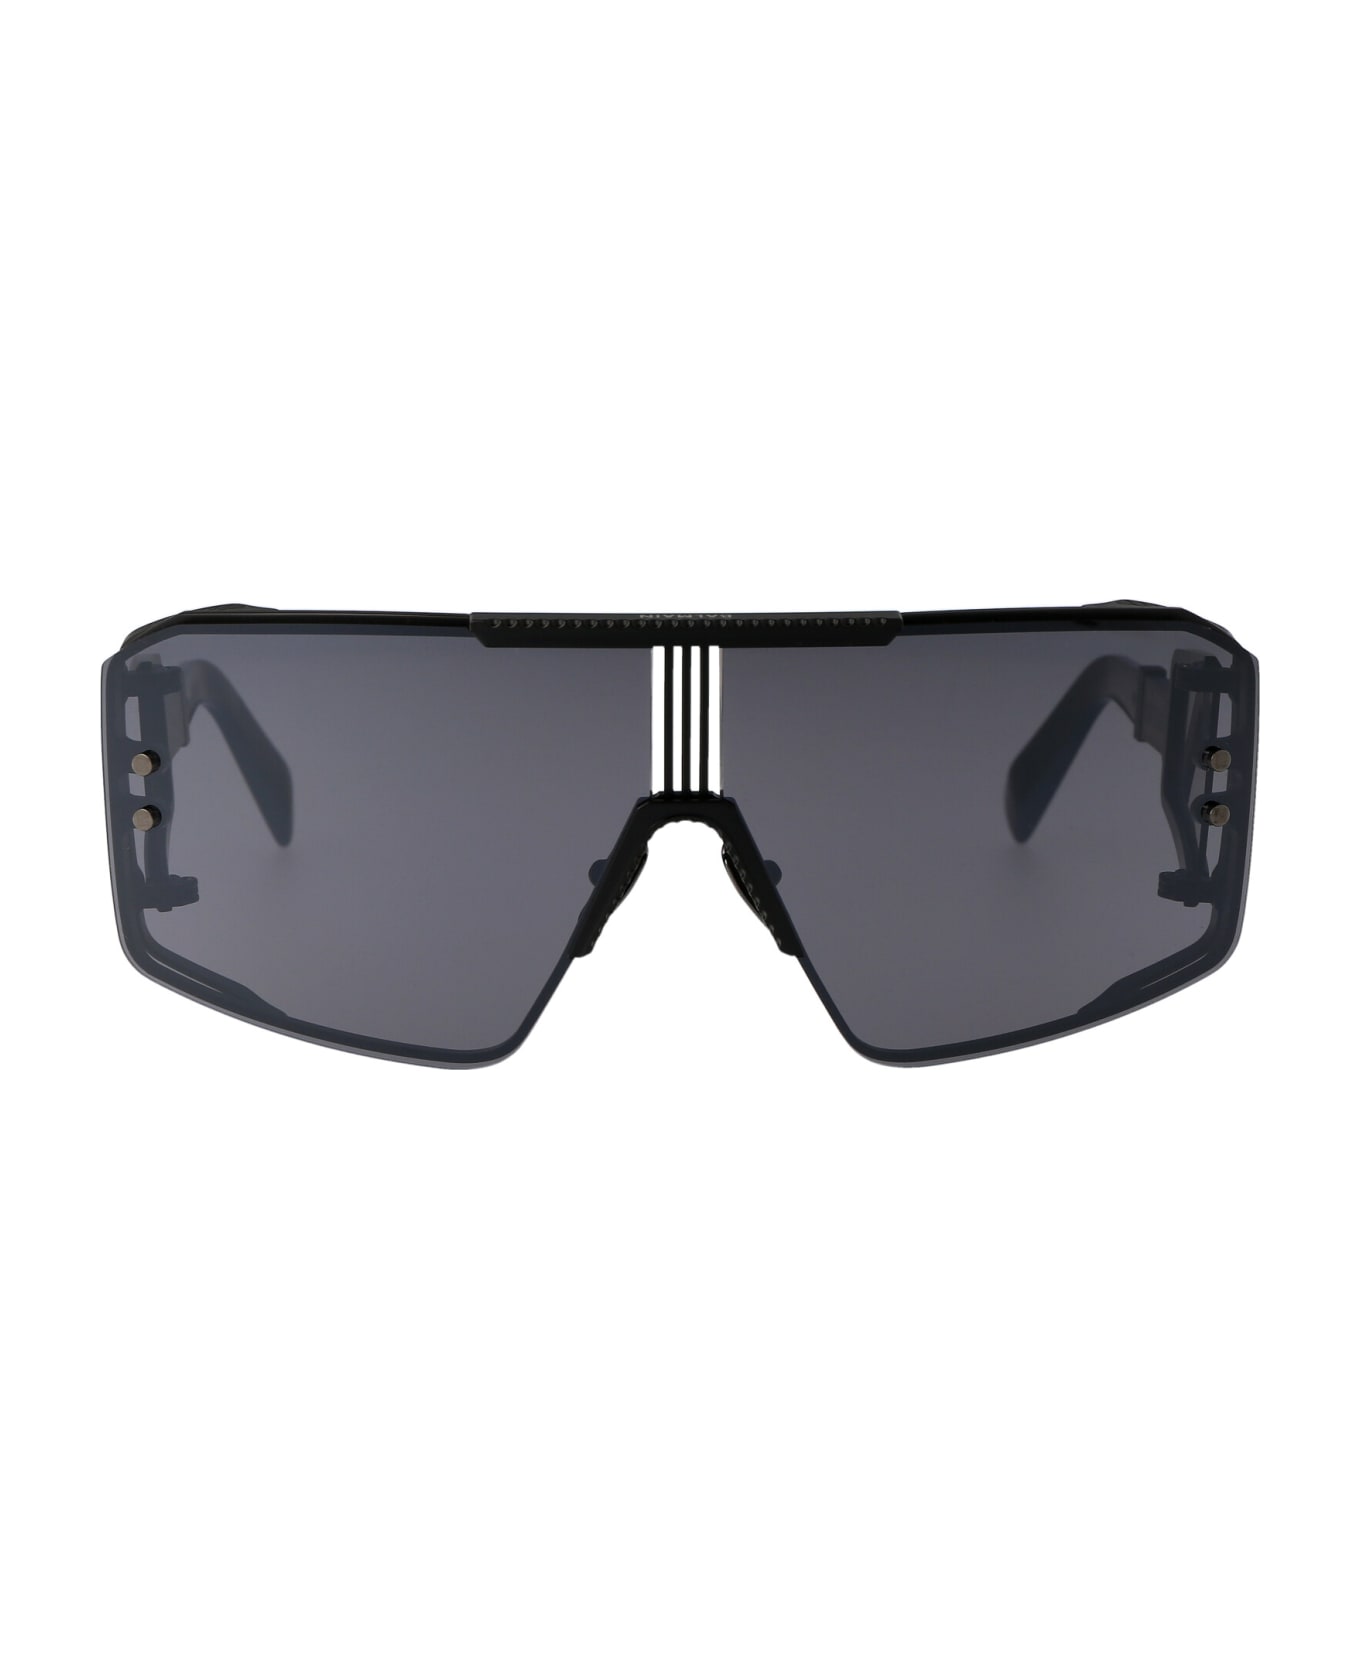 Balmain La Masque Sunglasses - 146B 146B BLK - BLK